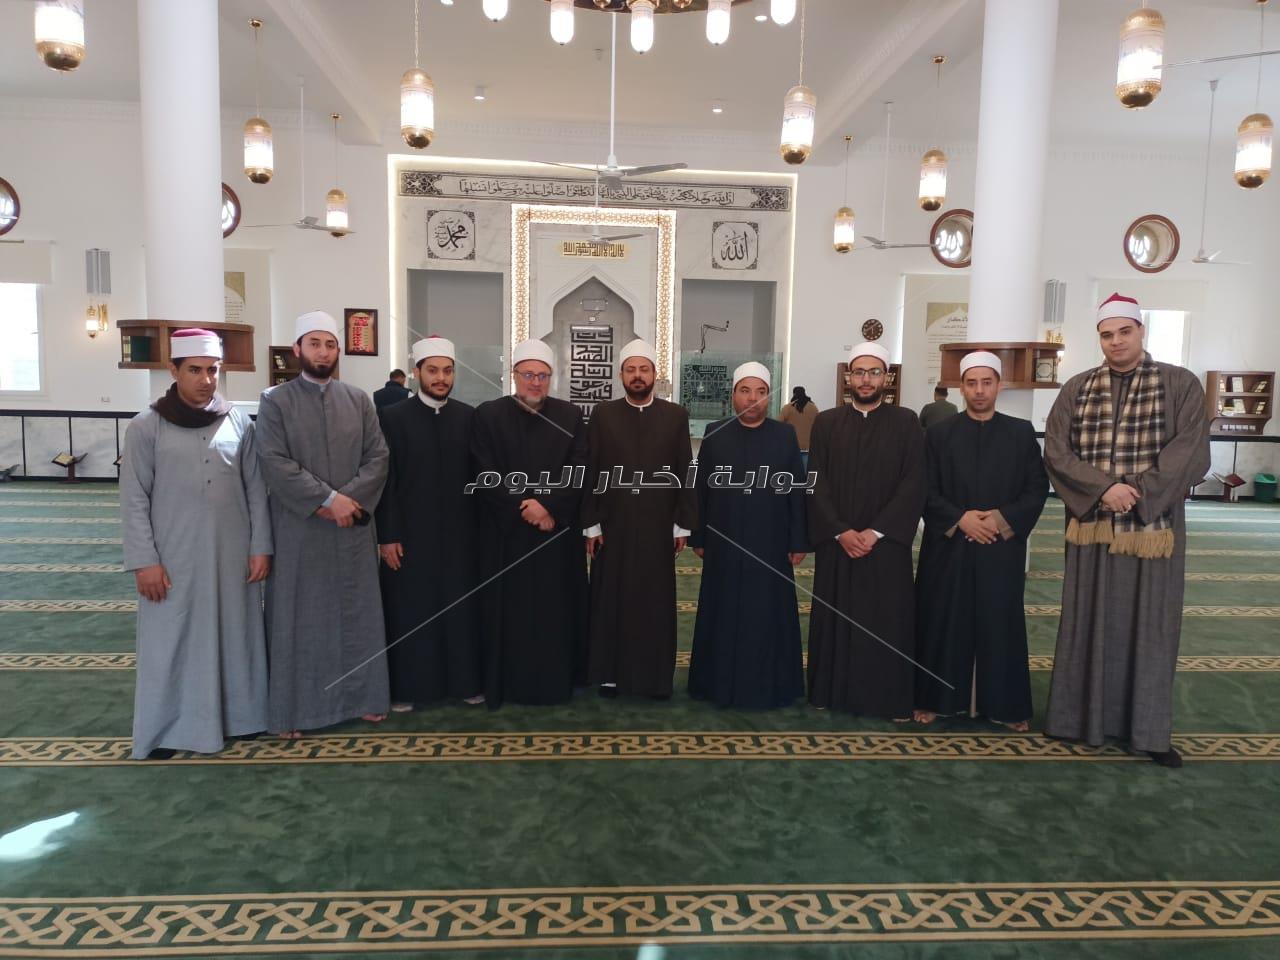 افتتاح مسجد بلال بن رباح بمطروح بعد تطويره